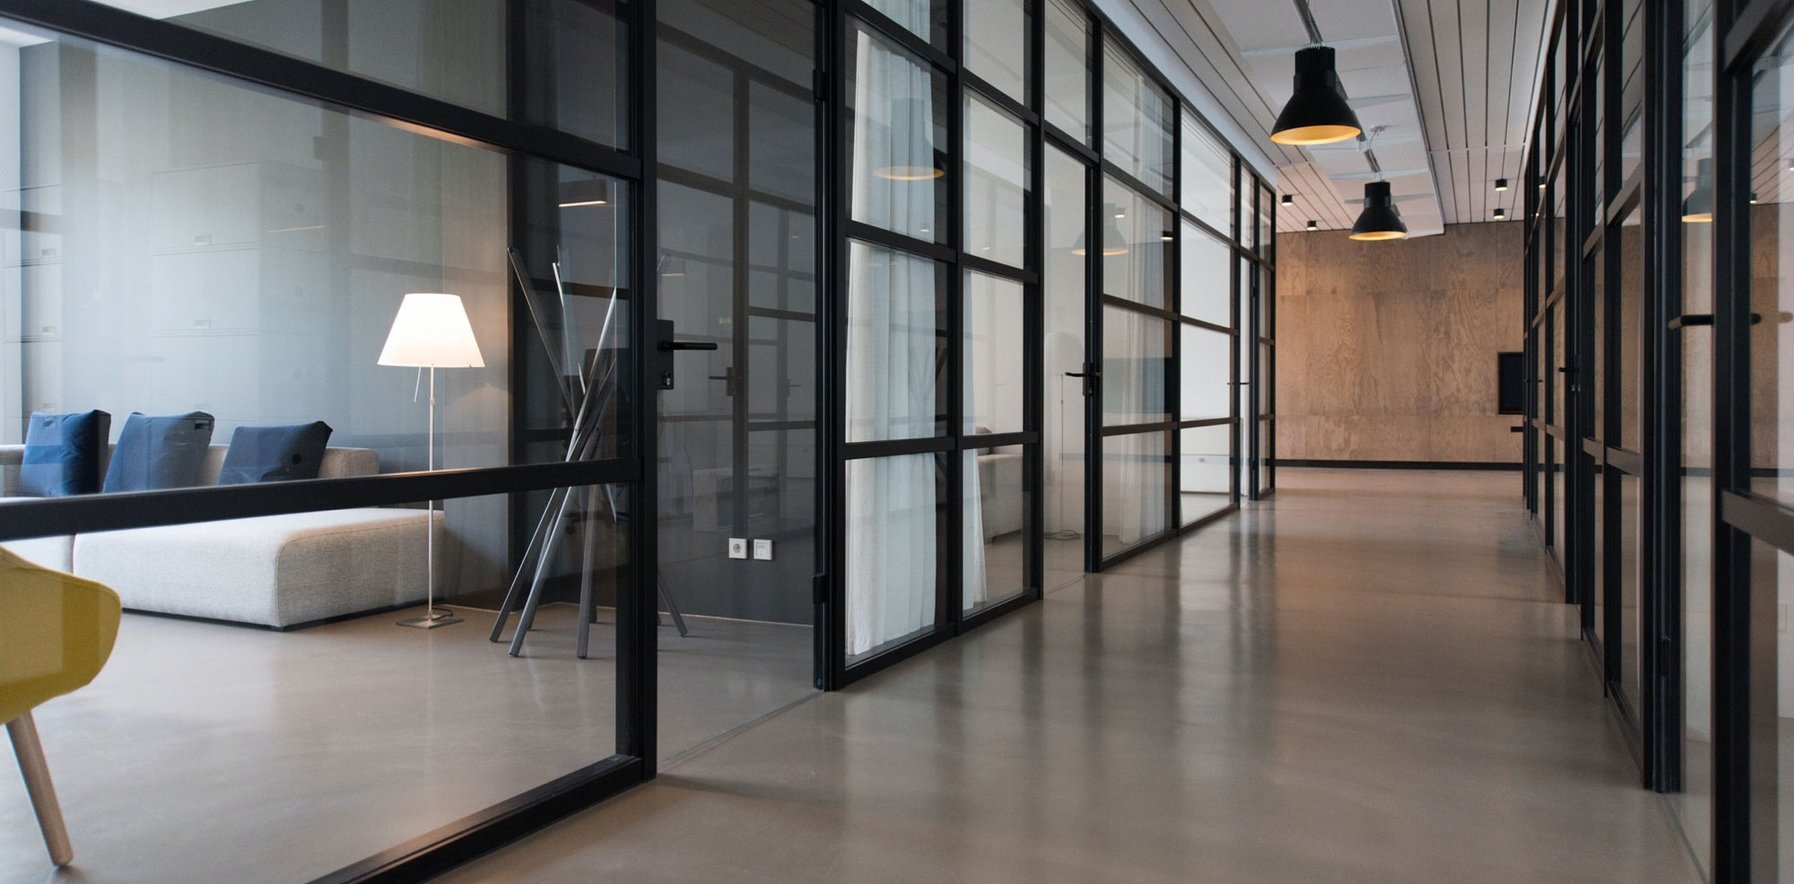 Büroinspiration - Schaffen Sie ein effizientes Arbeitsumfeld in den Großraumbüros.